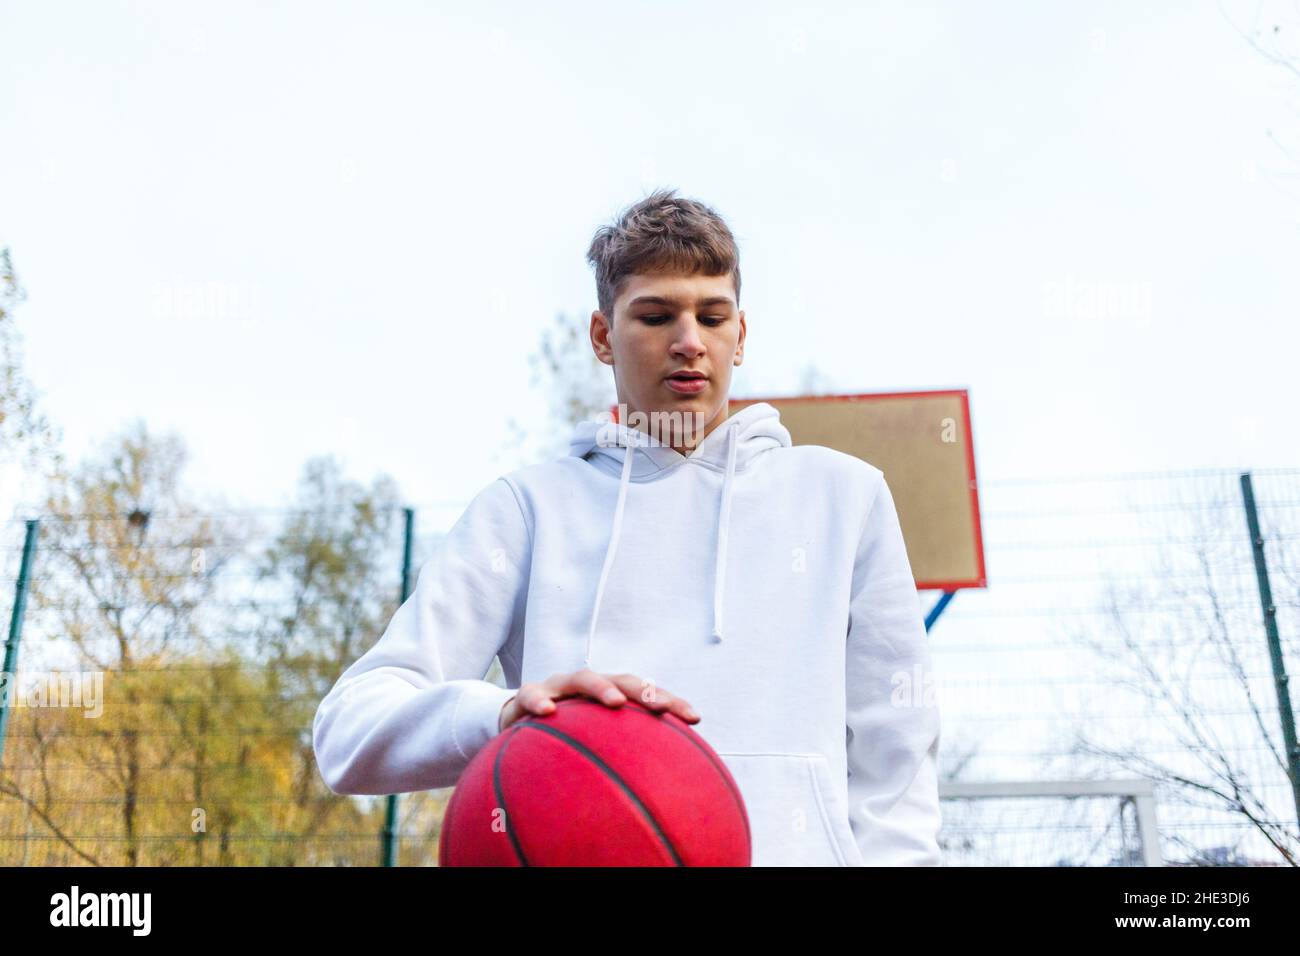 Netter Teenager im weißen Hoodie, der Basketball spielt. Kleiner Junge mit  roter Kugel, der Dribbeln lernt und auf dem Stadtplatz schießt. Hobby für  Kinder, aktives Leben Stockfotografie - Alamy